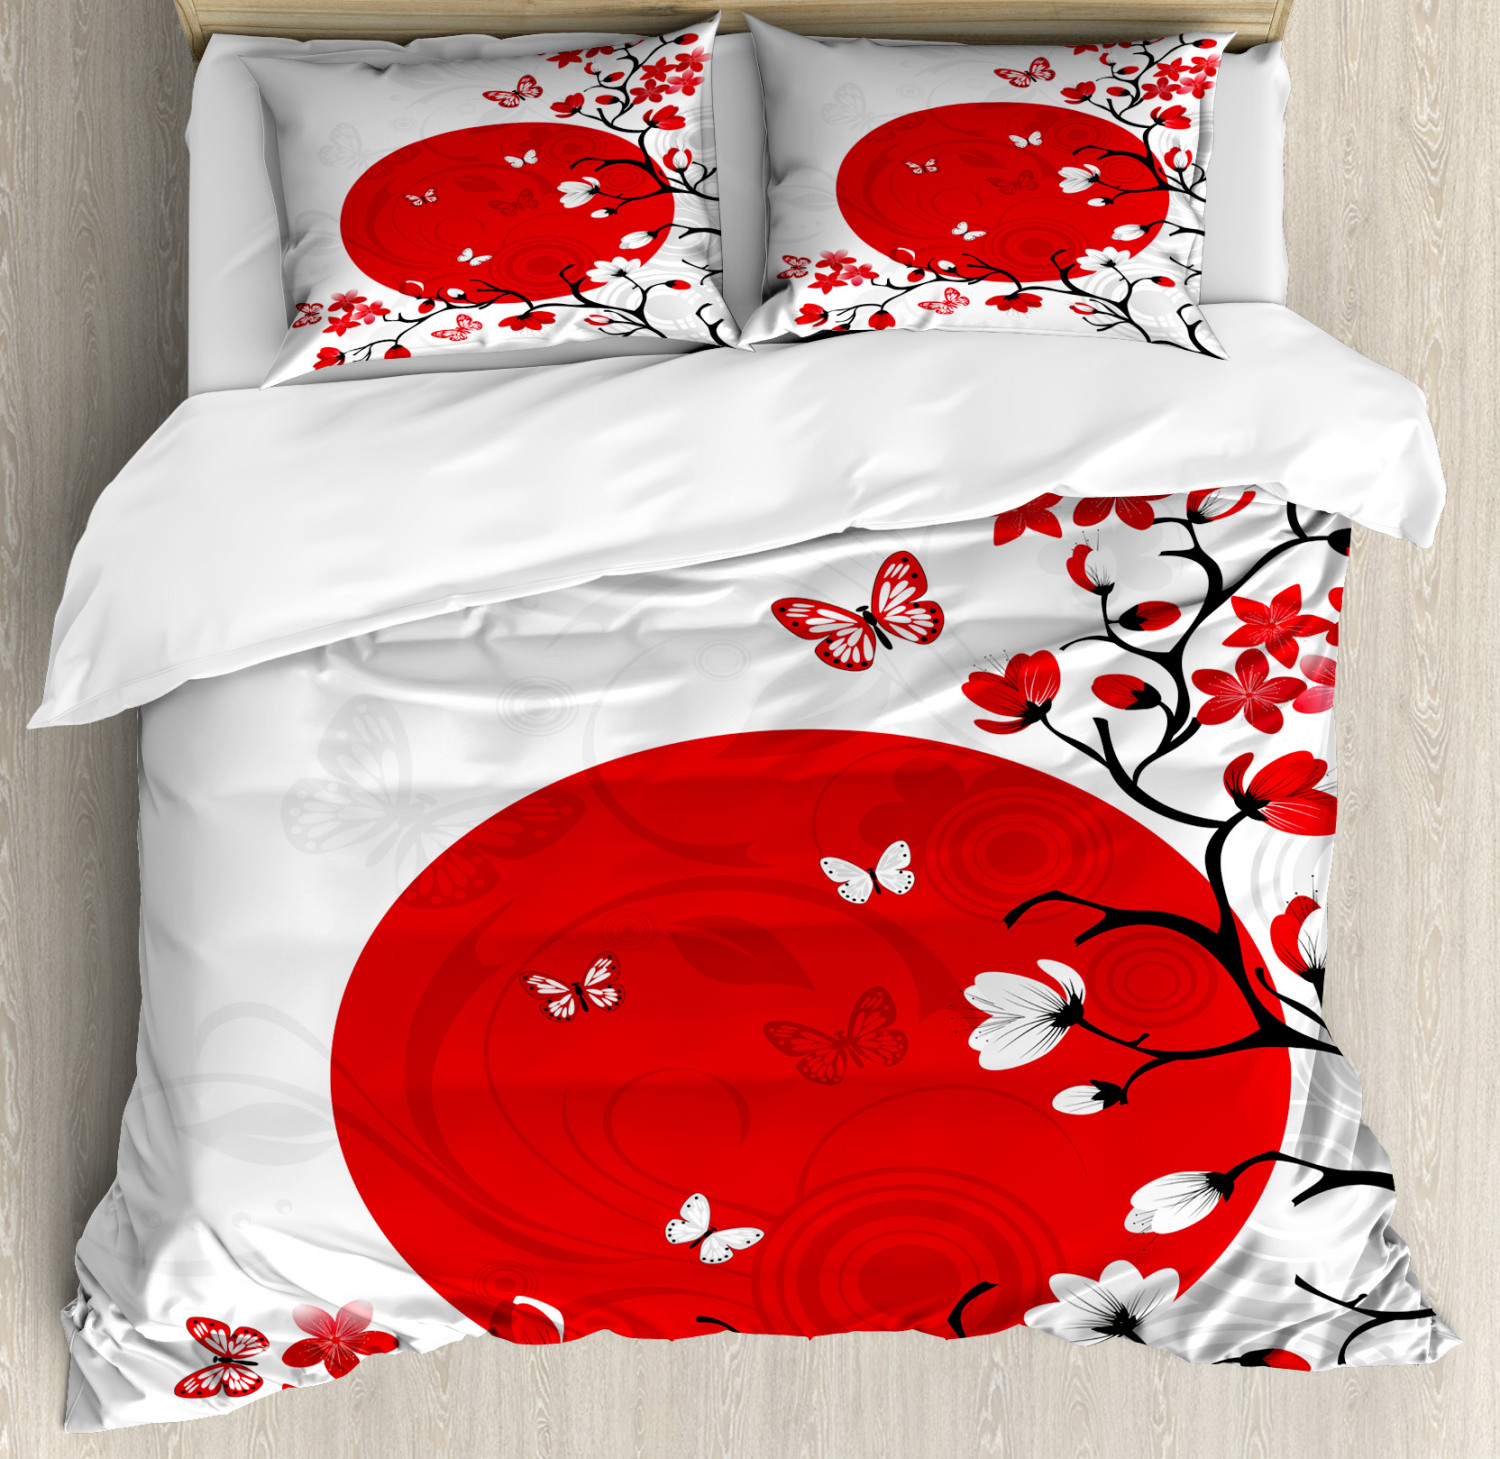 Japanese Duvet Cover Set With Pillow Shams Cherry Sakura Trees